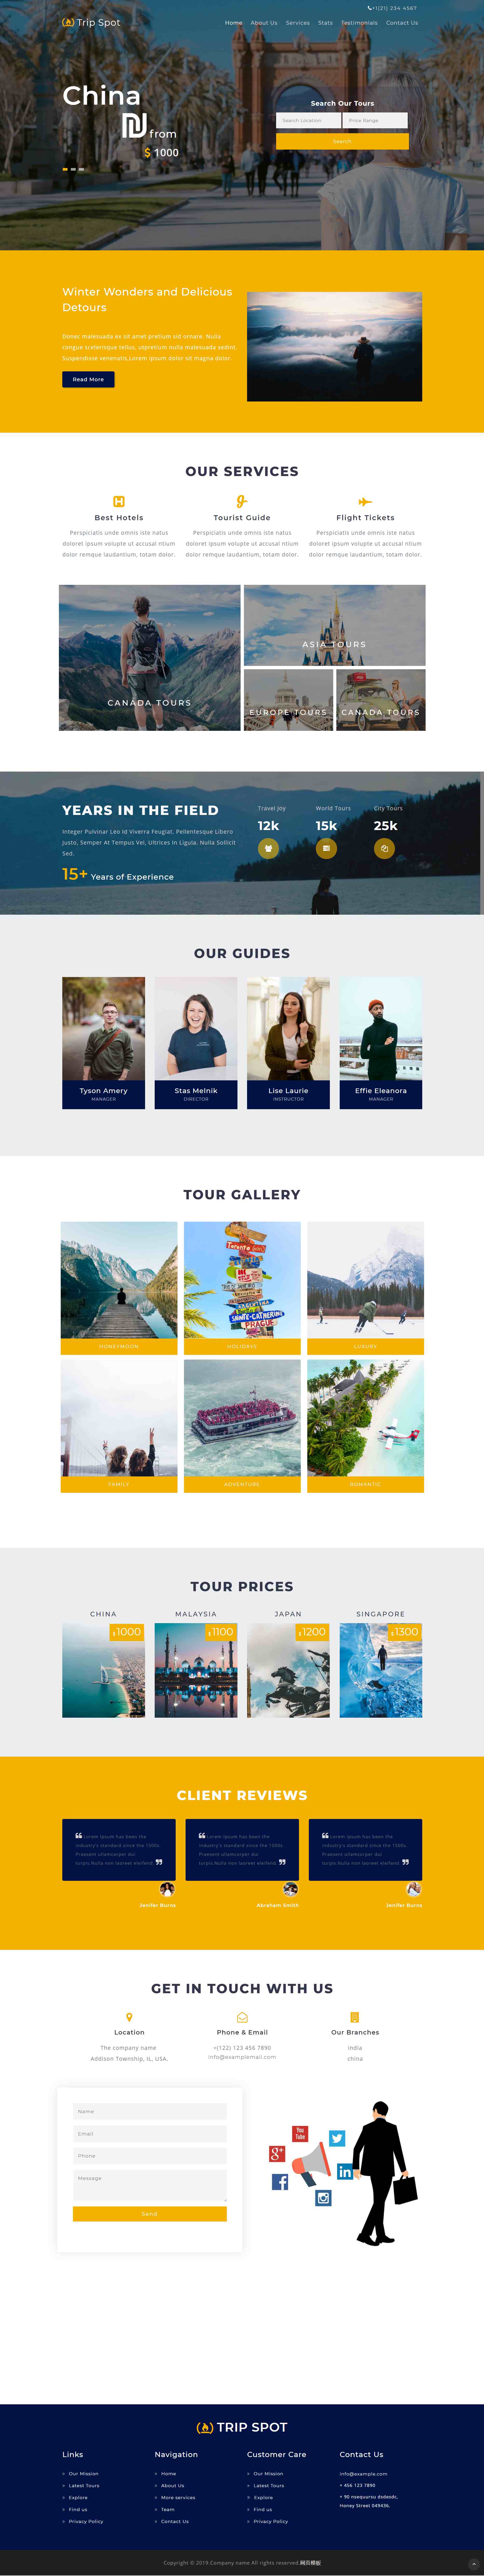 黄色大气样式响应式出国旅行旅游网页模板